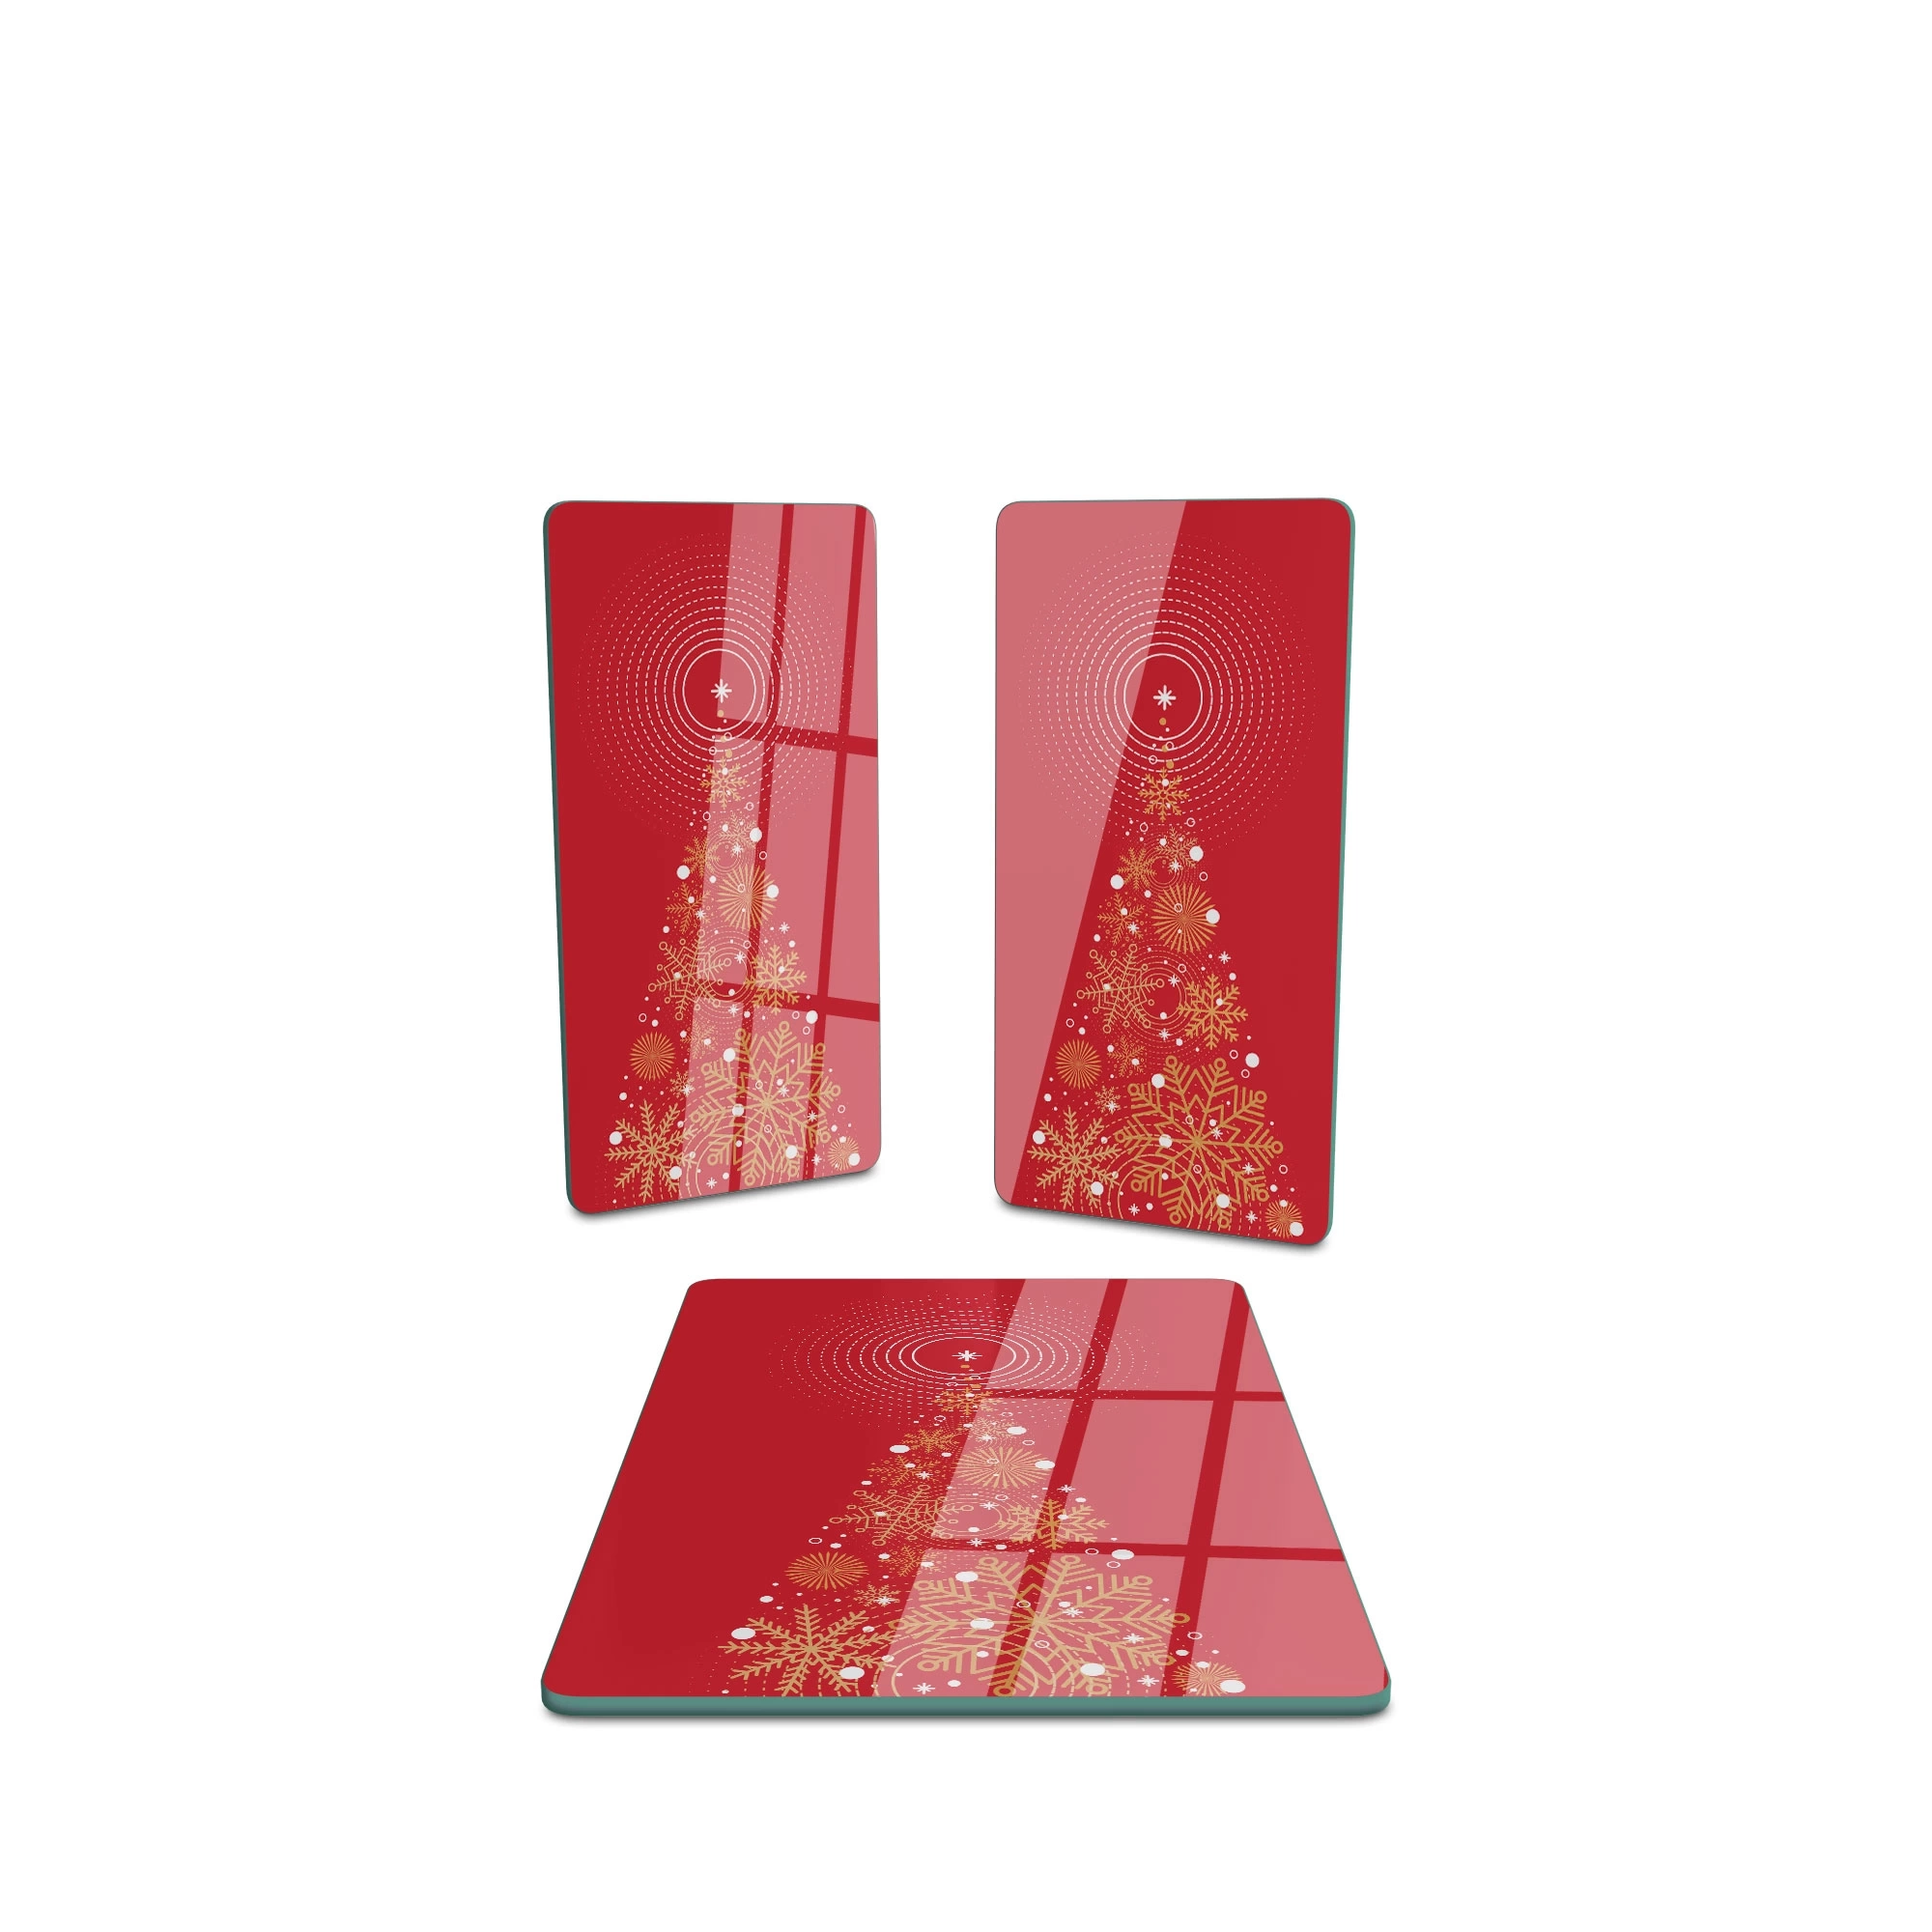 Decovetro Cam Sunum Servis Tabağı 3lü Dikdörtgen Set Kırmızı Yılbaşı Ağacı Desenli